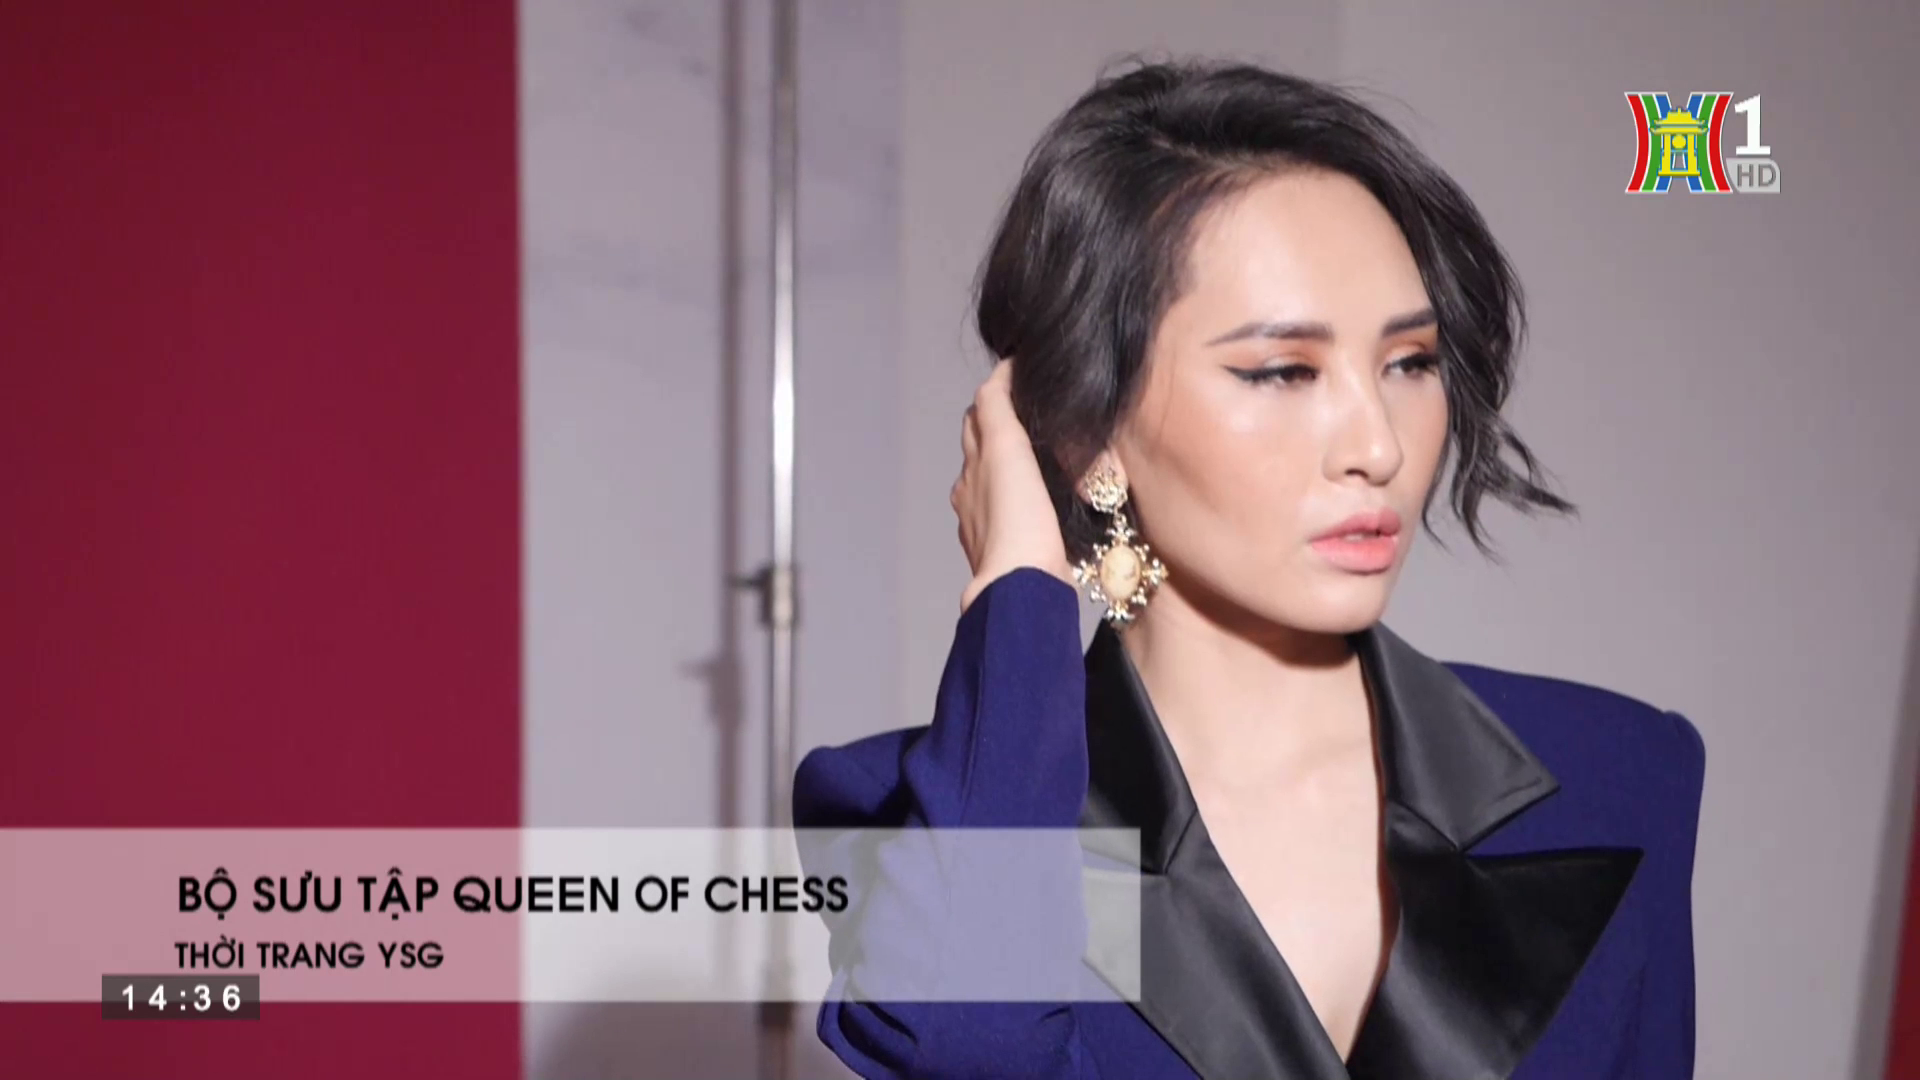 Đẹp và phong cách: Bộ sưu tập Queen of Chess